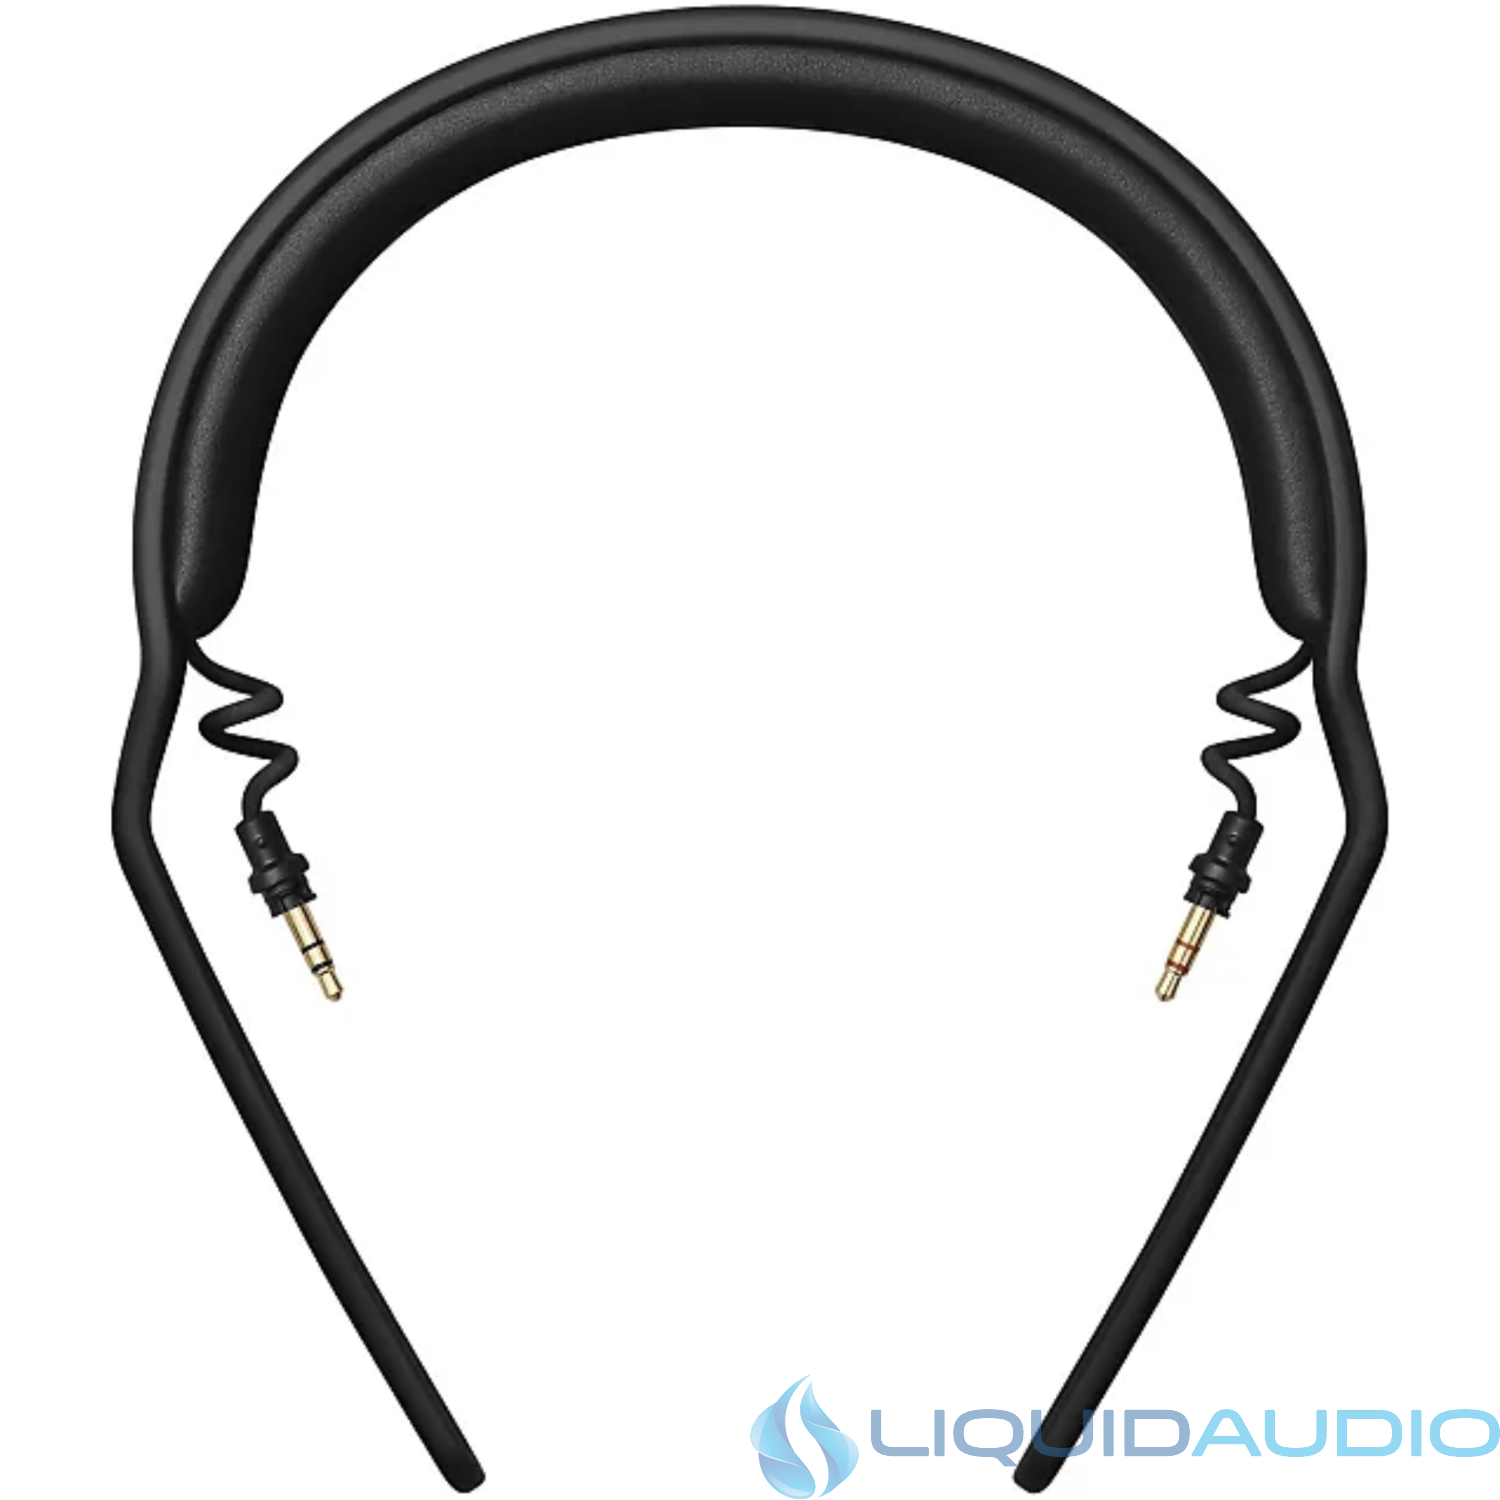 AIAIAI H03 Headphone Headband Unit PU Leather Padding for TMA-2 Modular